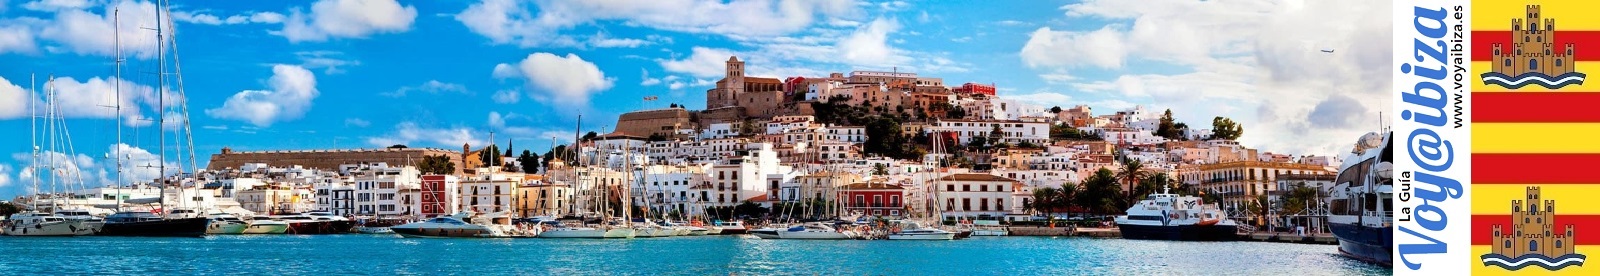 Qué ver y qué hacer en Ibiza (Eivissa)